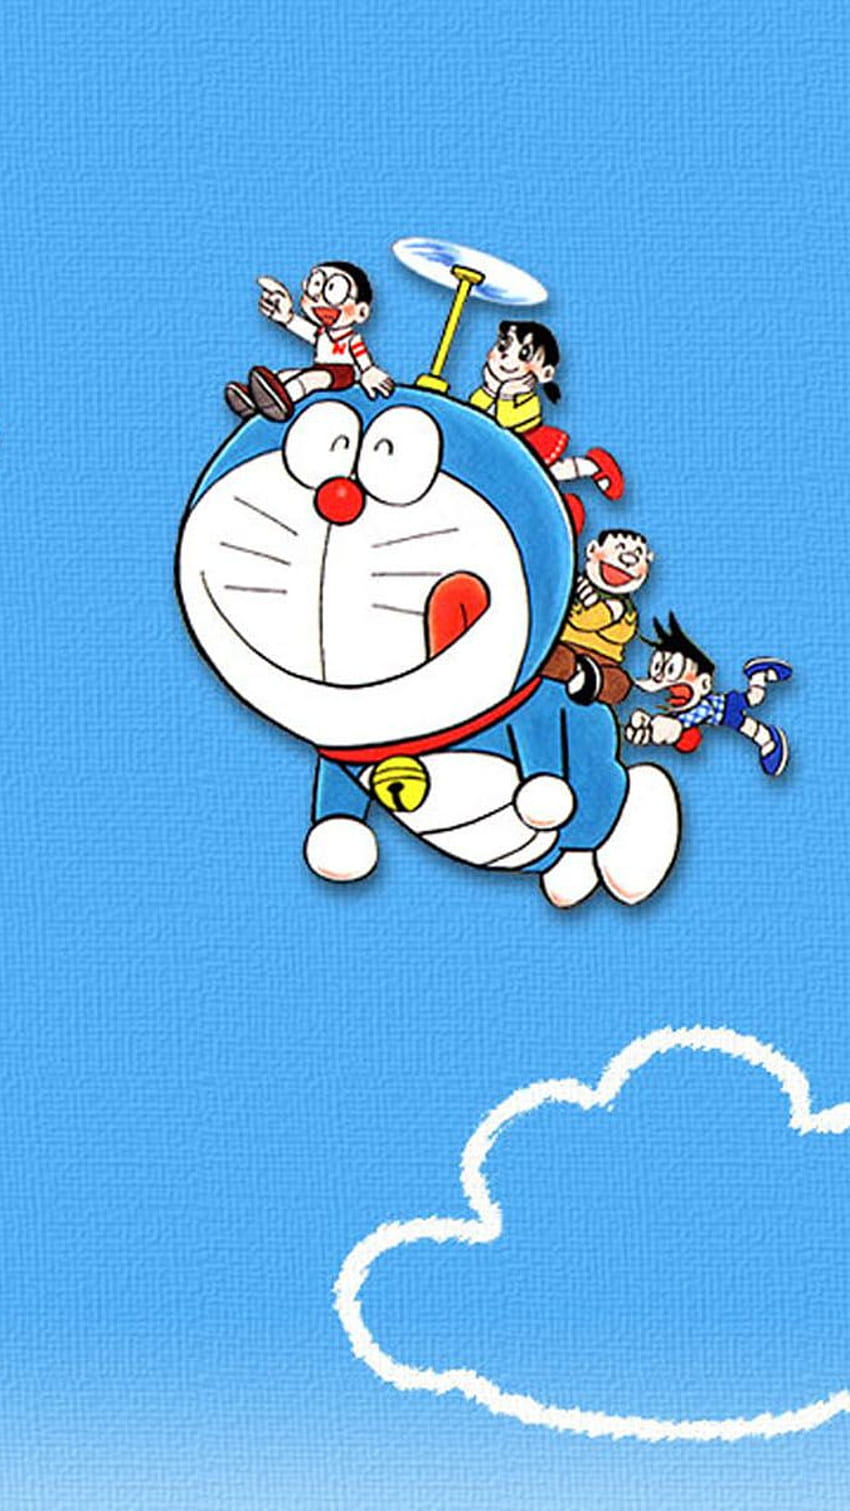 Doraemon - Cùng đón xem bộ sưu tập hình nền điện thoại Doraemon cartoon HD đầy màu sắc và đáng yêu, giúp bạn thư giãn sau những ngày làm việc mệt mỏi. Hình ảnh Doraemon đáng yêu và dễ thương chắc chắn sẽ khiến bạn bất ngờ và thích thú.